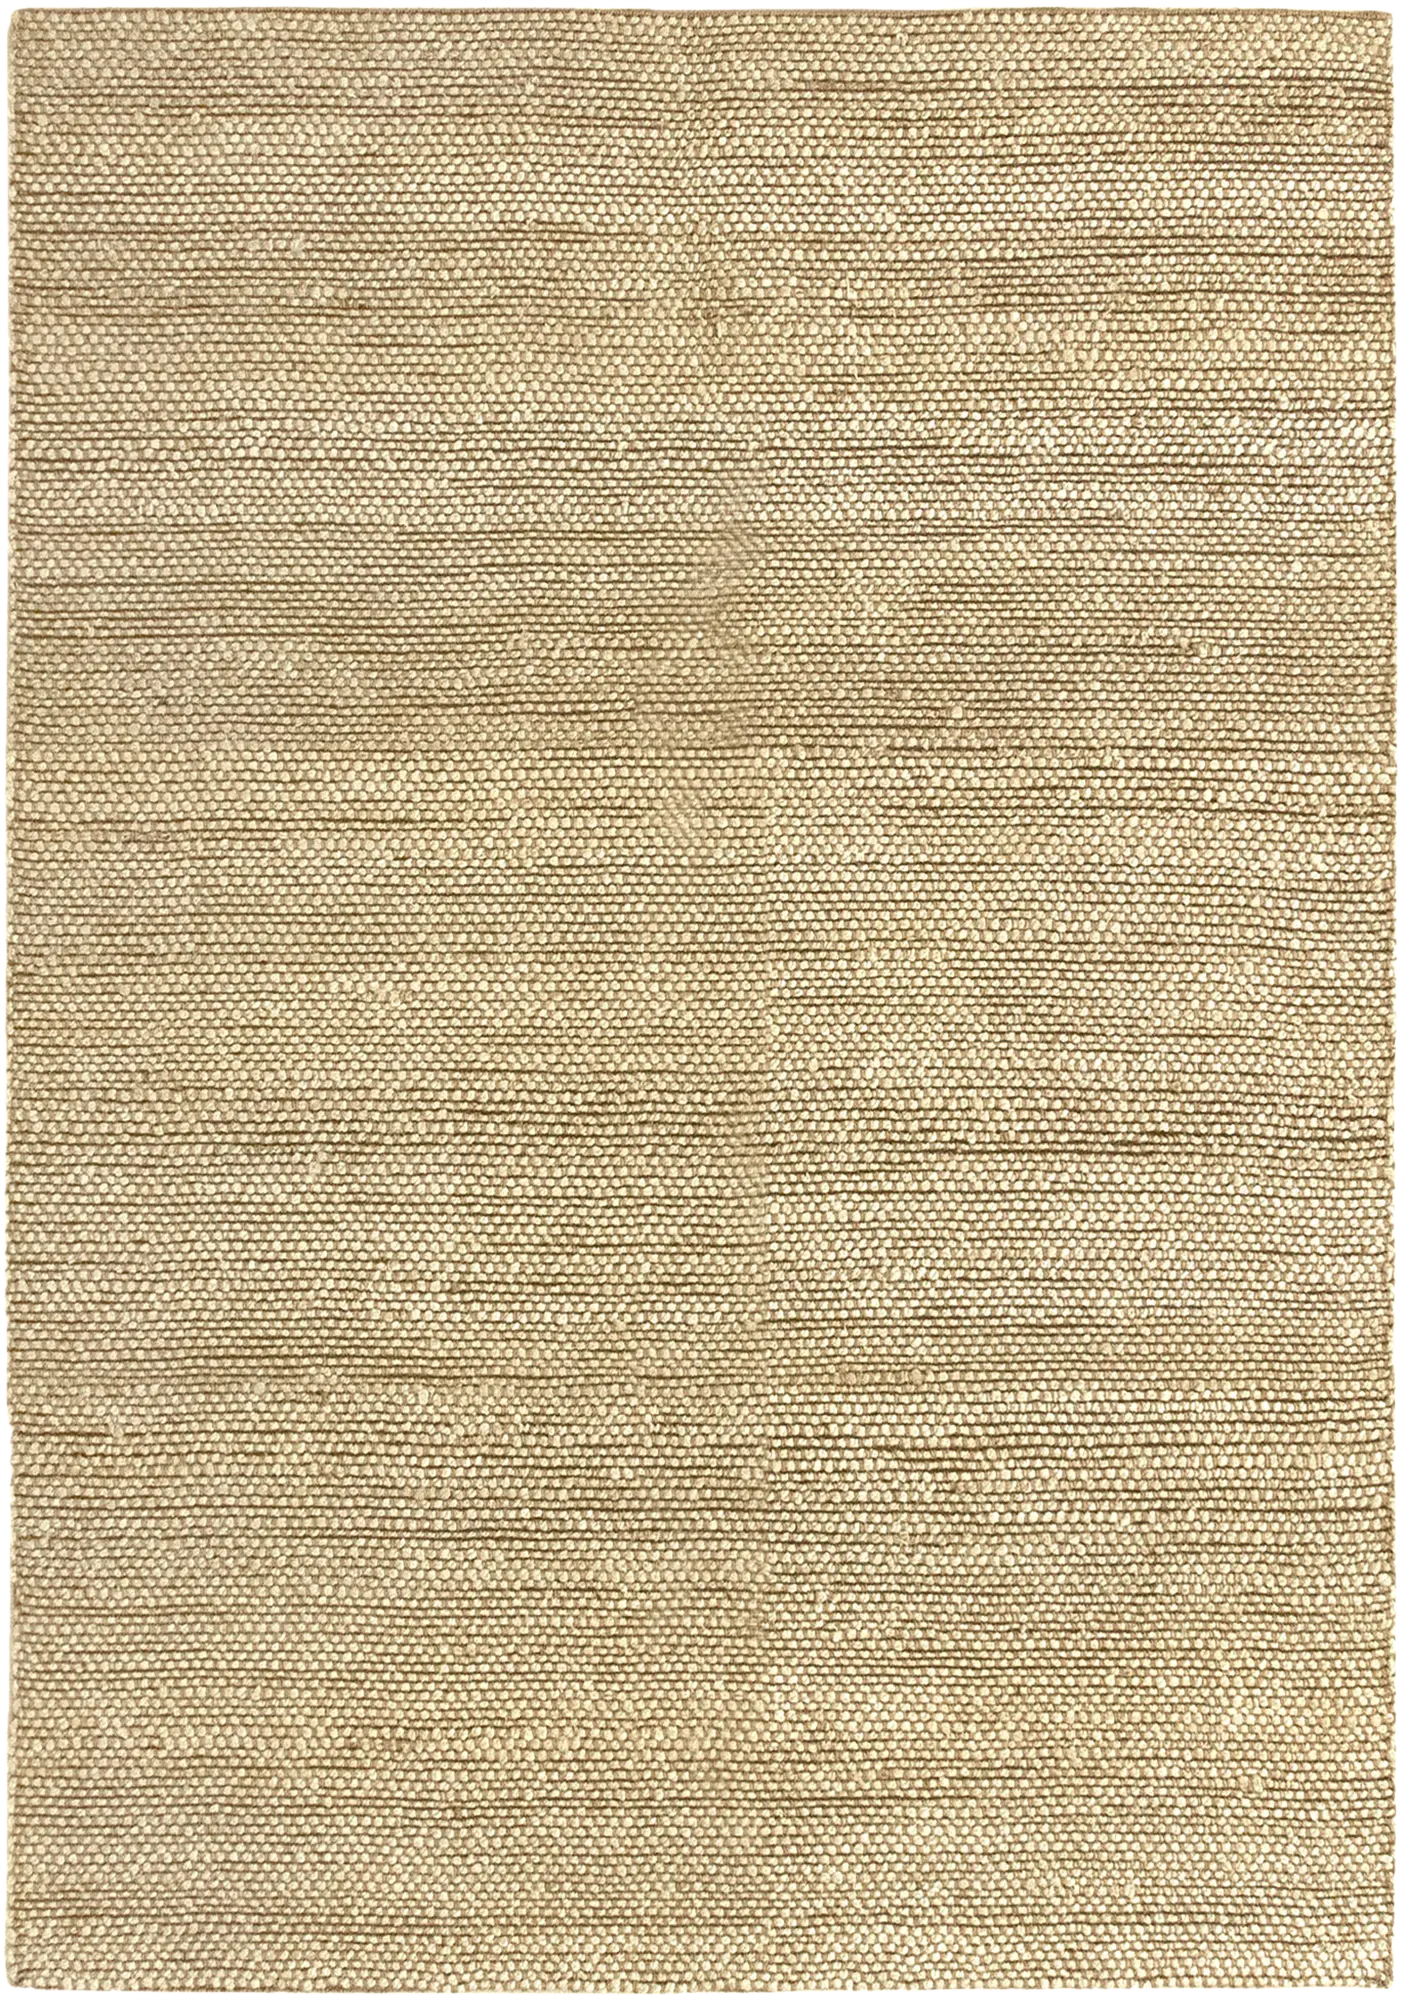 Alfombra yute giralda fibra natural / blanco 200x250cm